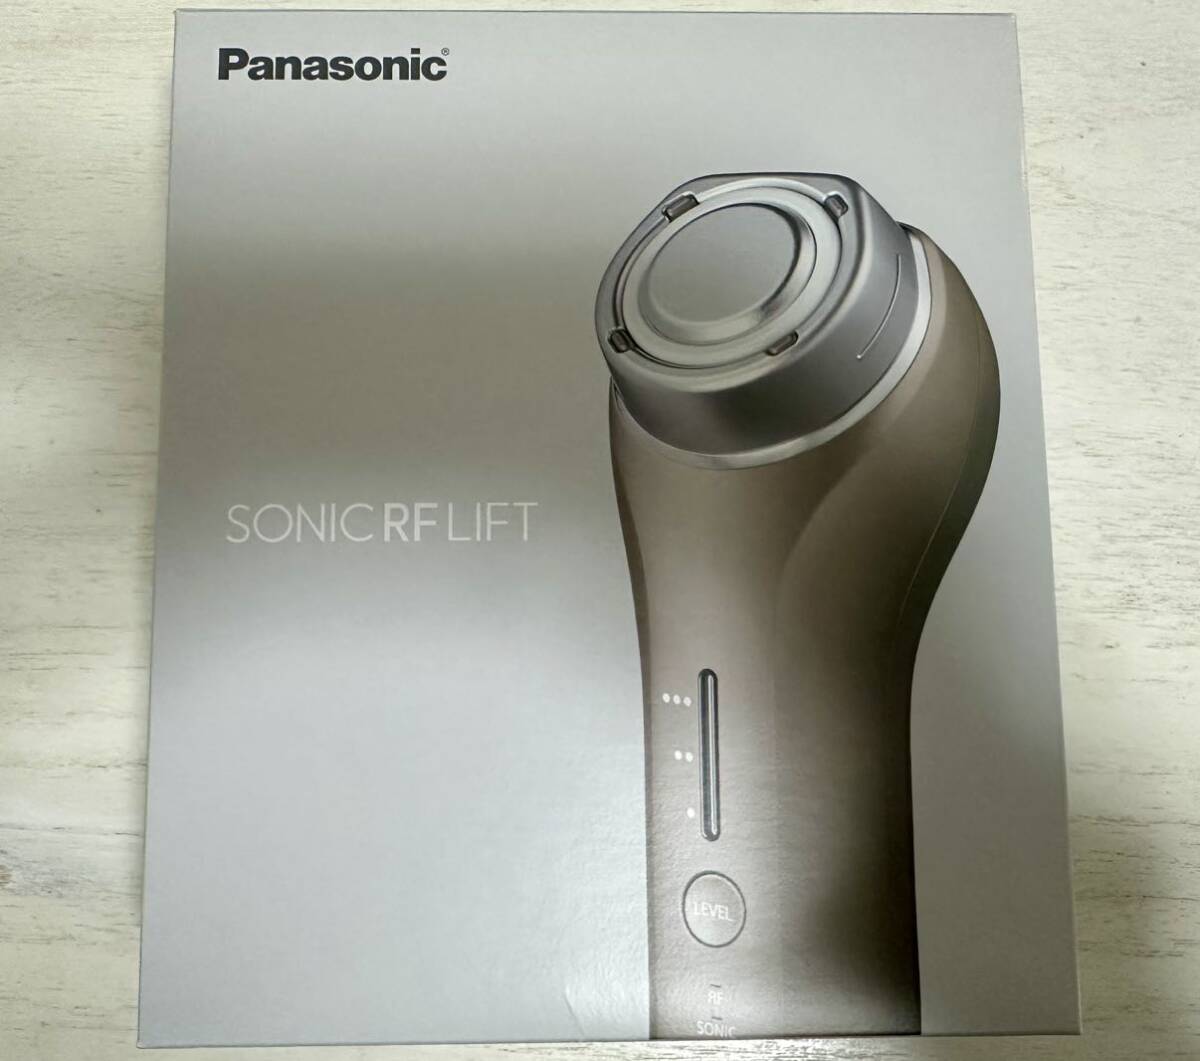  Panasonic Panasonic Sonic RF подъёмник EH-SR75 прекрасный лицо контейнер [ б/у ]